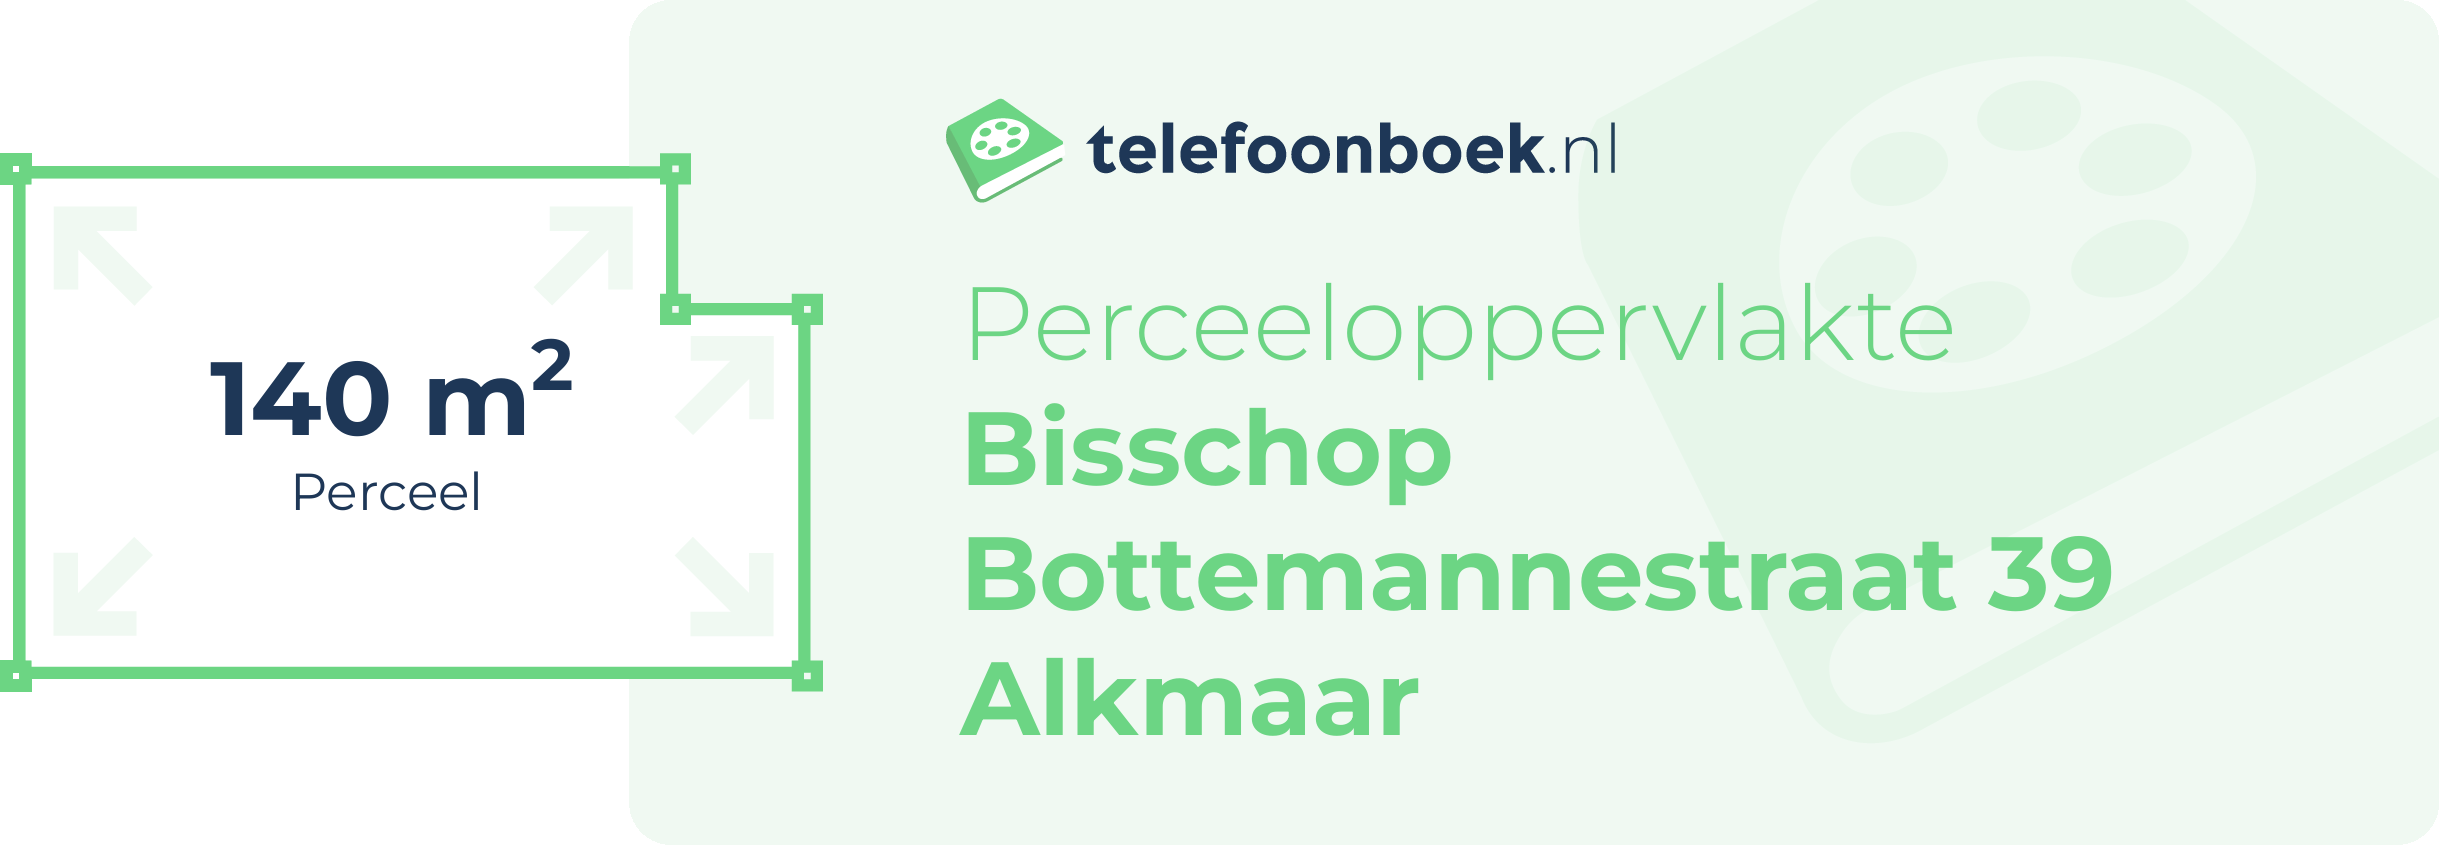 Perceeloppervlakte Bisschop Bottemannestraat 39 Alkmaar